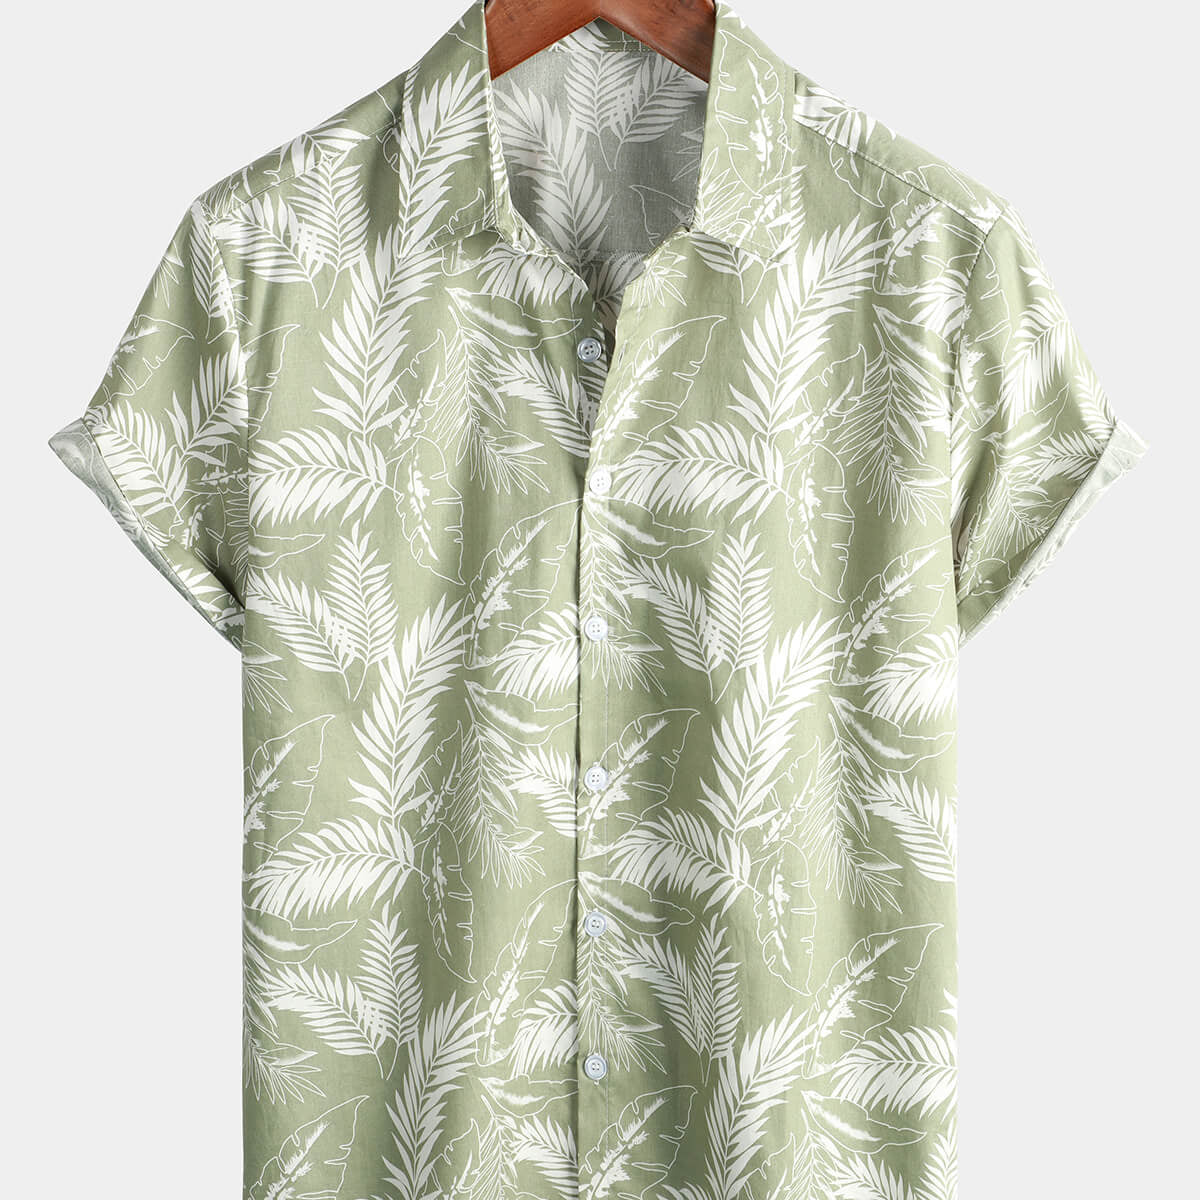 Camisa de manga corta con botones transpirable de algodón para vacaciones en la playa con hojas tropicales suaves hawaianas de color verde claro para hombre